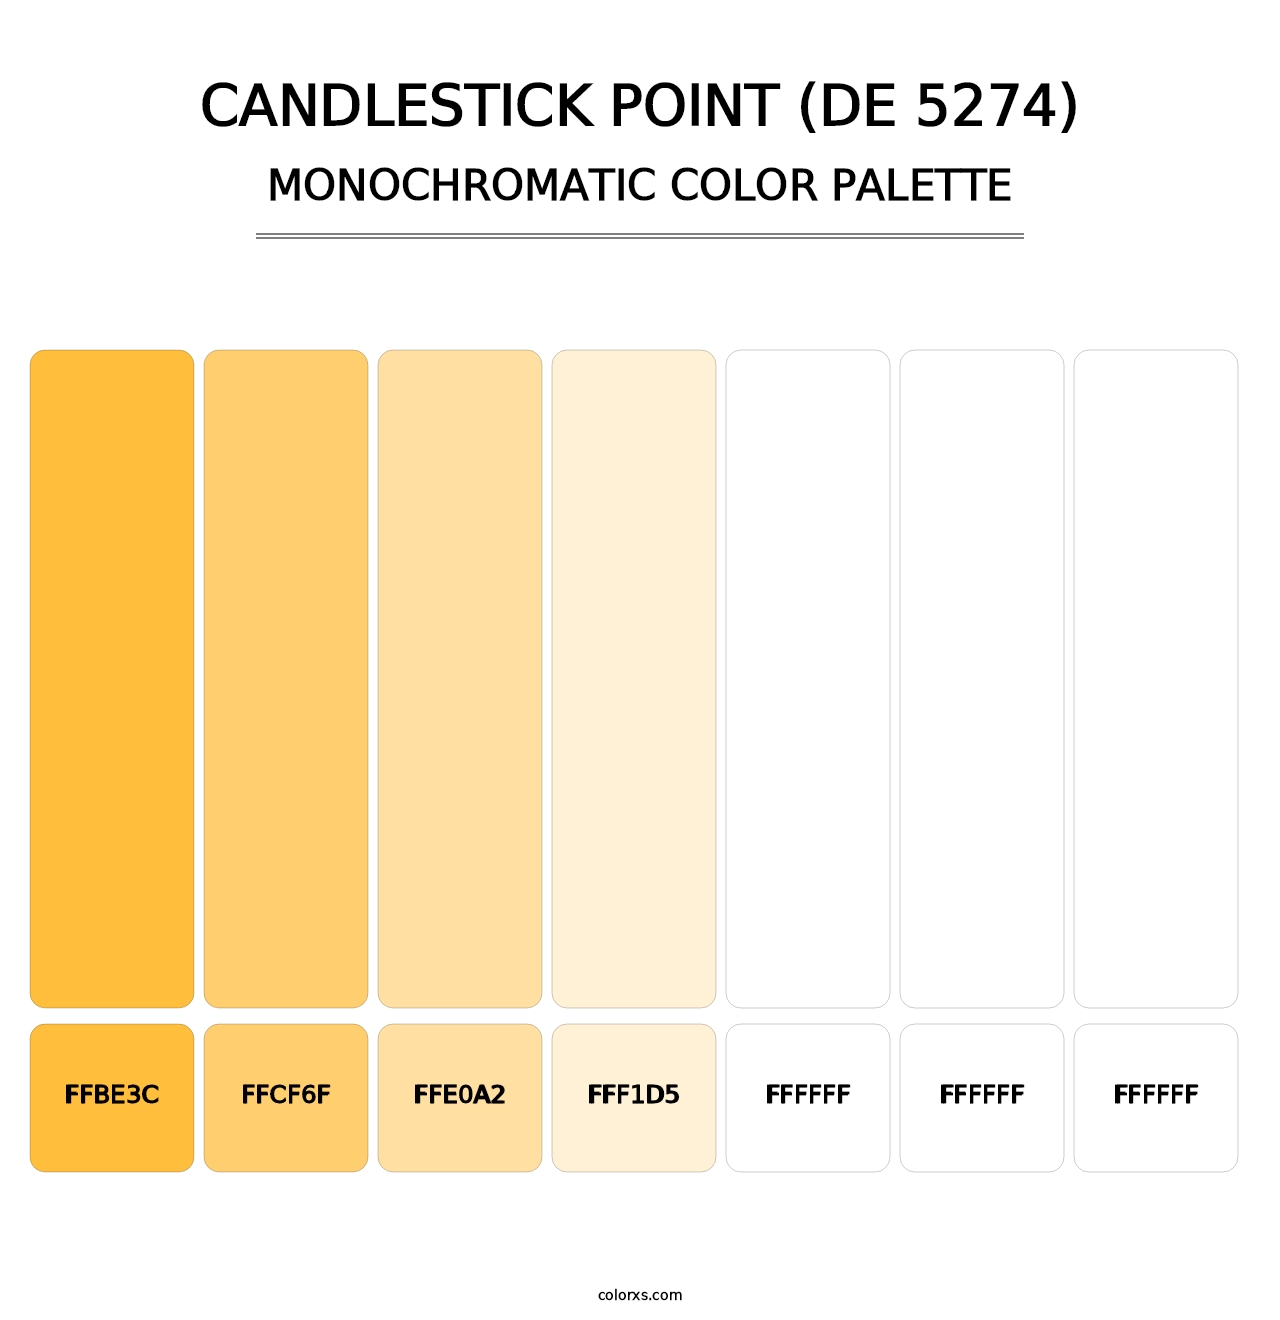 Candlestick Point (DE 5274) - Monochromatic Color Palette